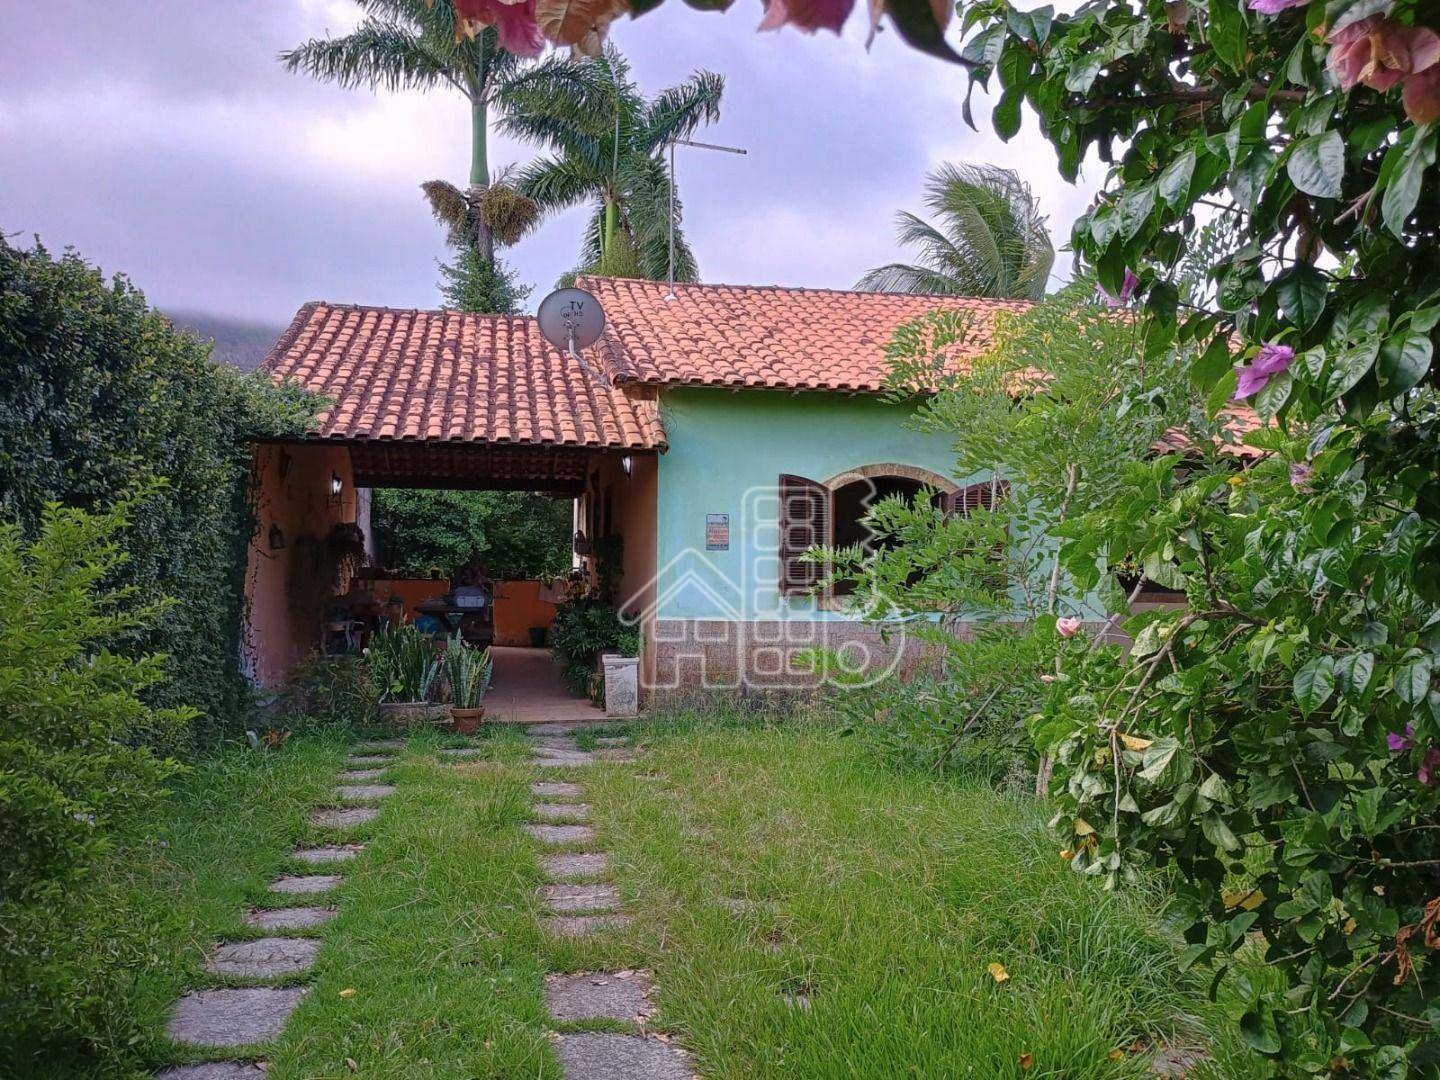 Casa com 3 dormitórios à venda, 90 m² por R$ 520.000,00 - Jardim Atlântico Oeste (Itaipuaçu) - Maricá/RJ